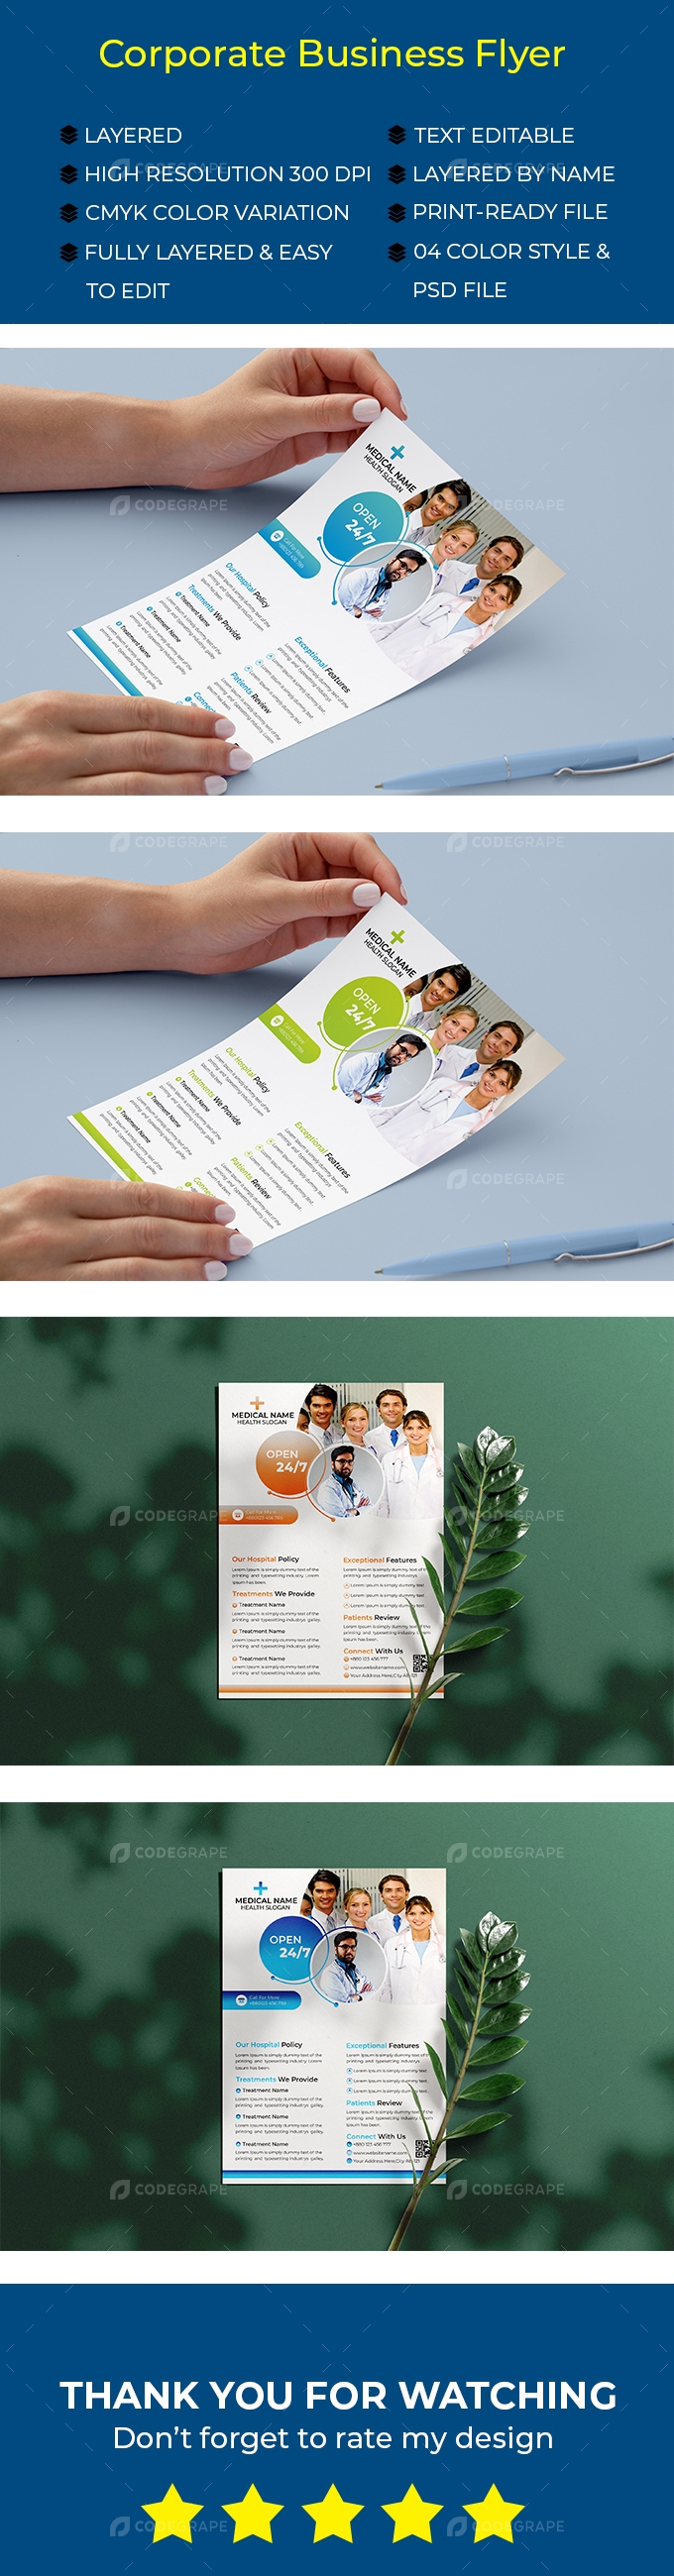 Corporate Medical Flyer Design